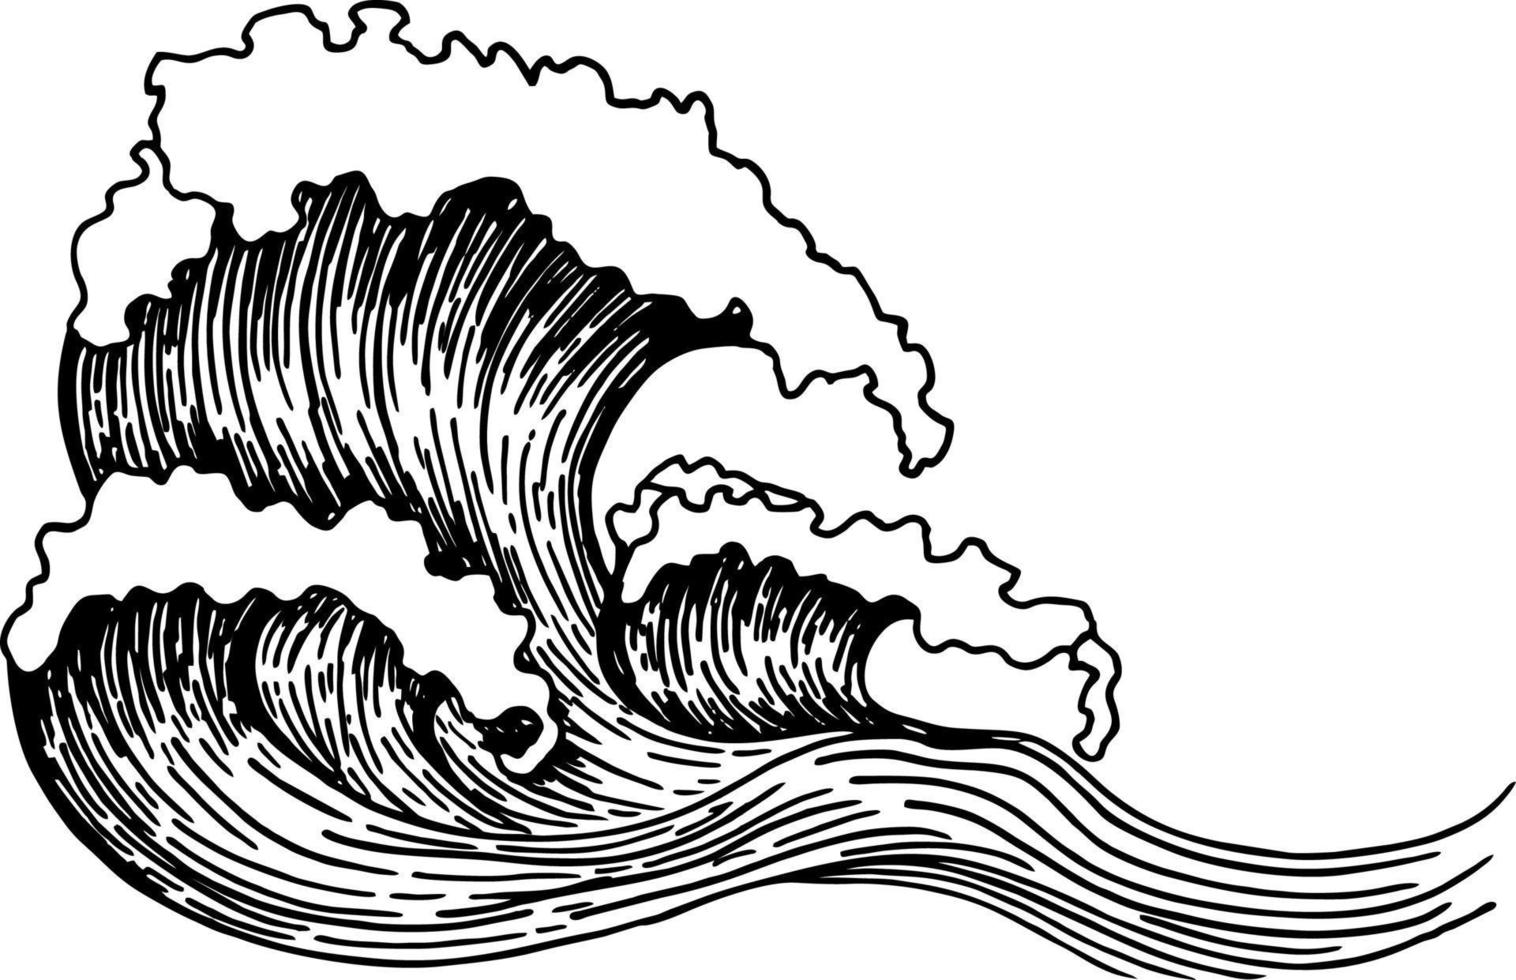 Sea waves sketch. Outline of sea wave vector